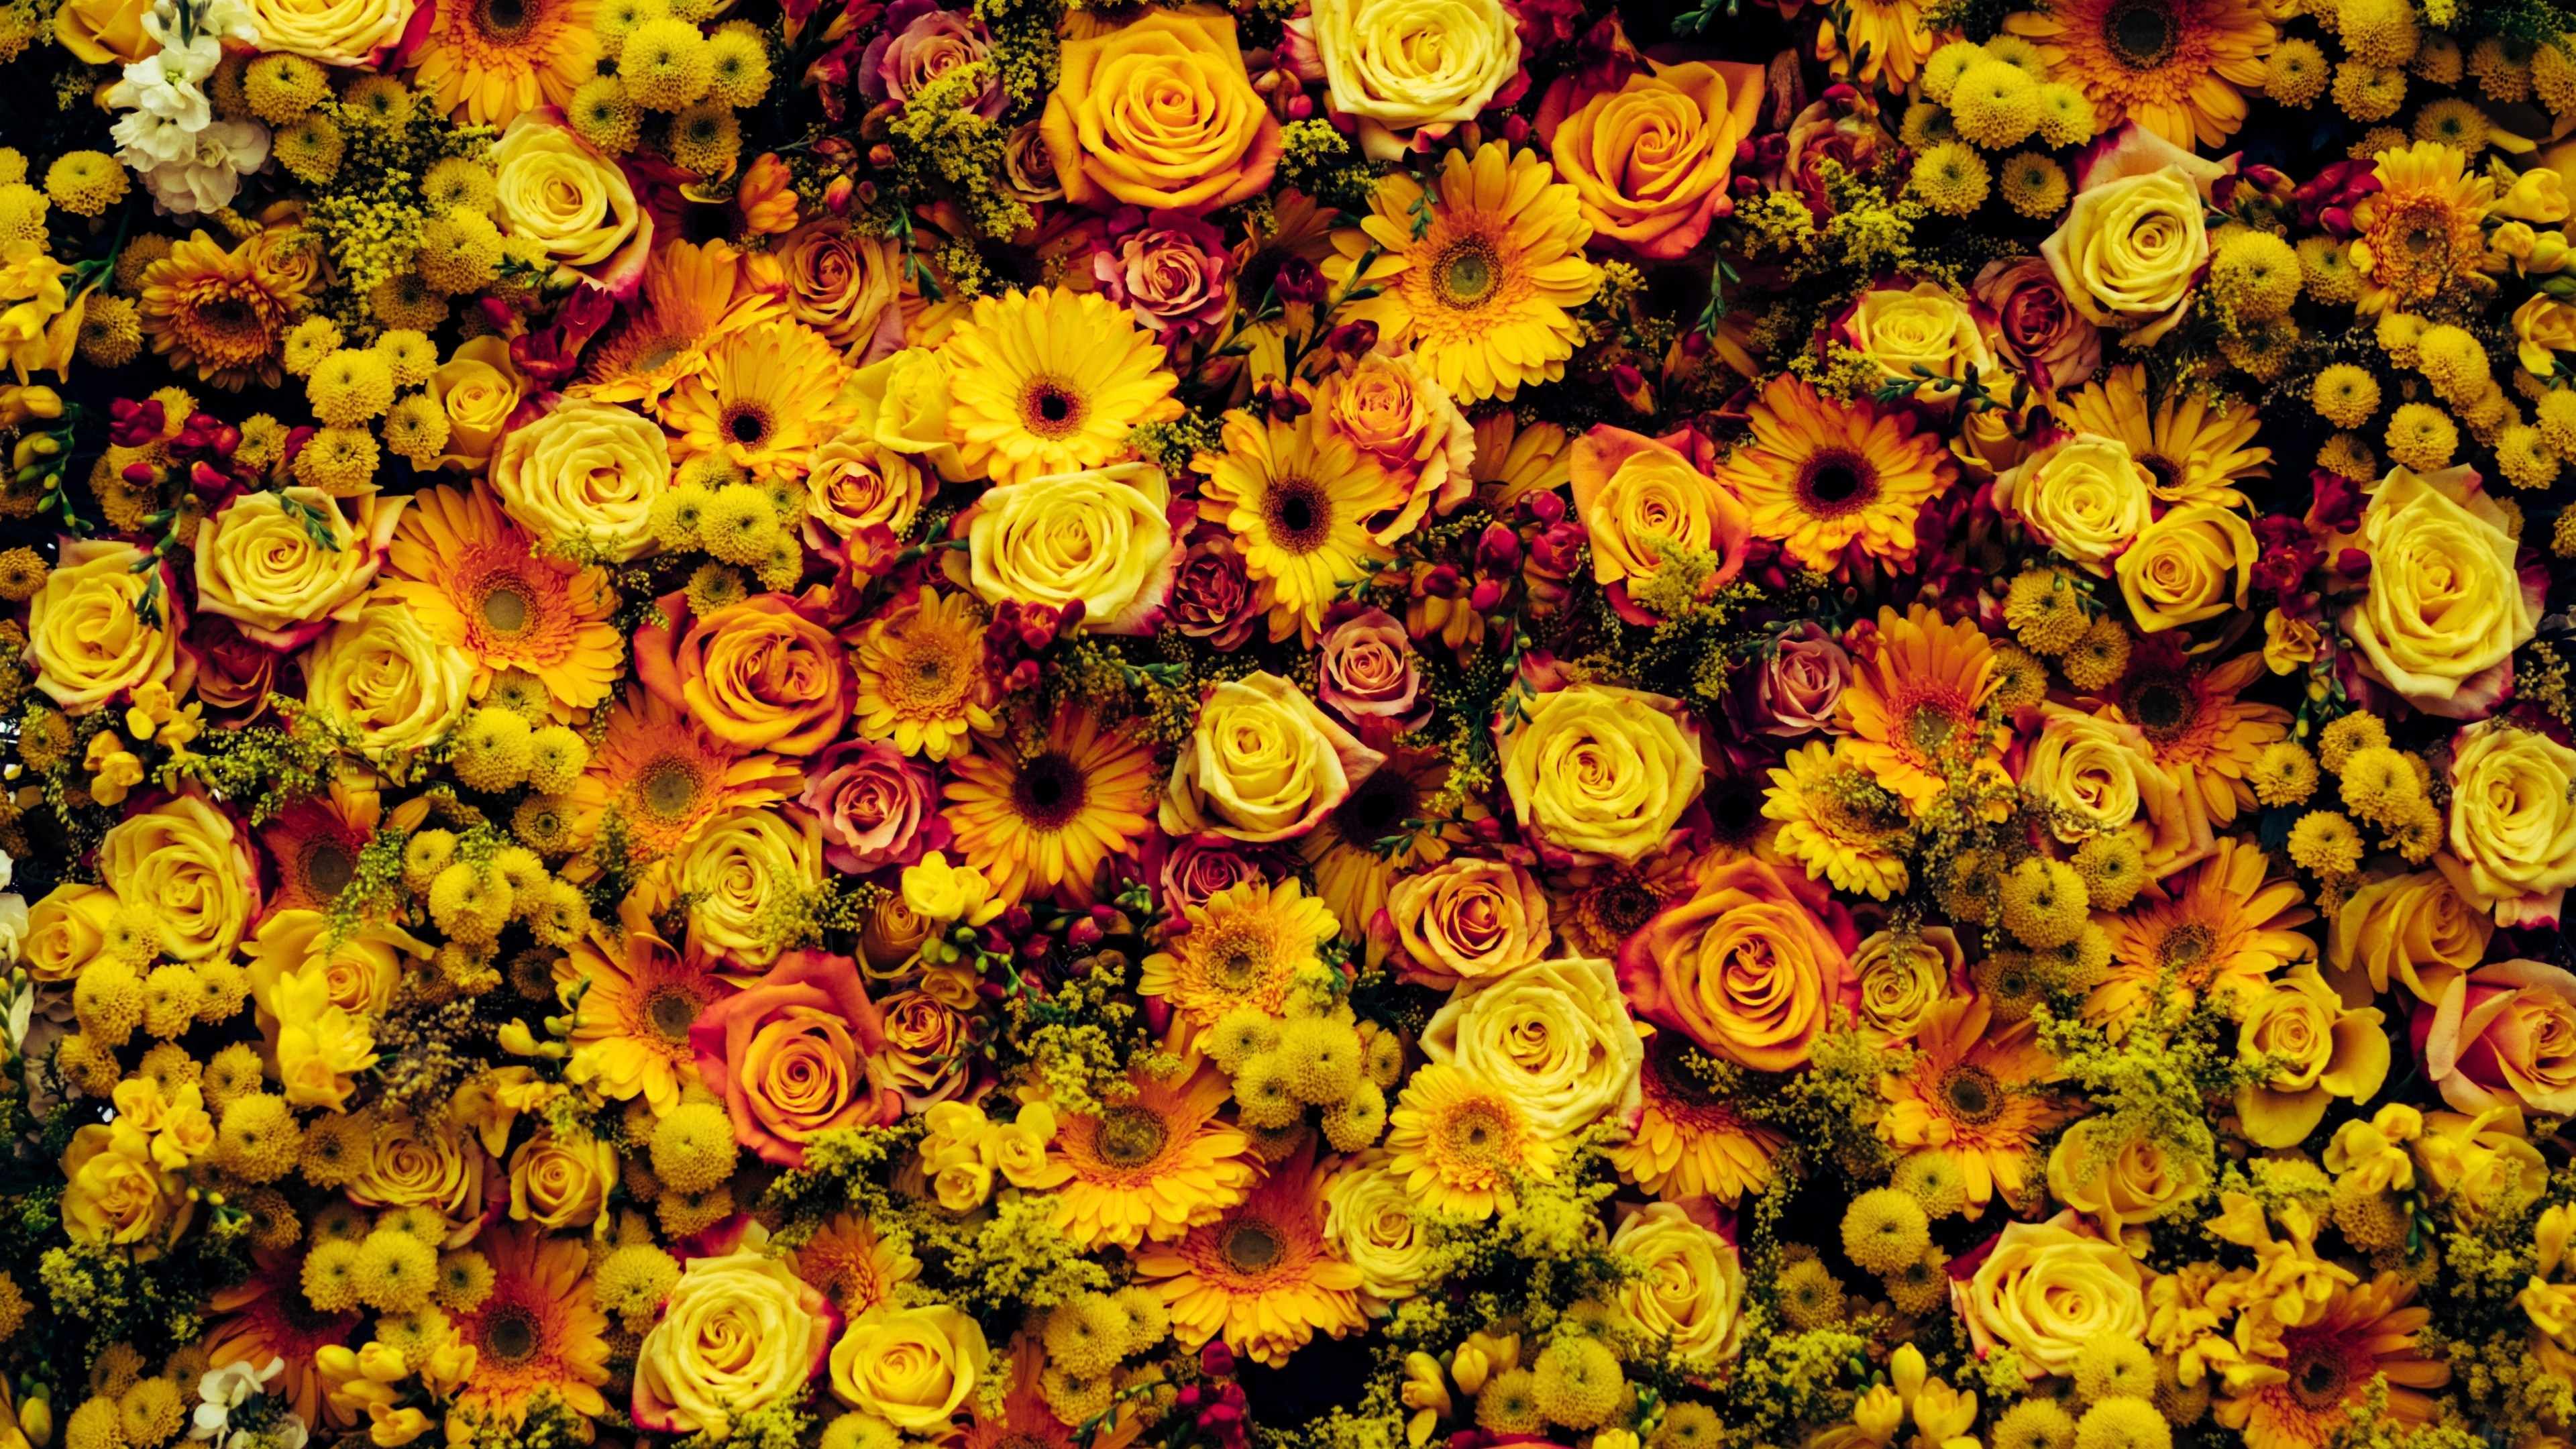 花卉设计, 黄色的, 花艺, 弹簧, 向日葵 壁纸 3840x2160 允许